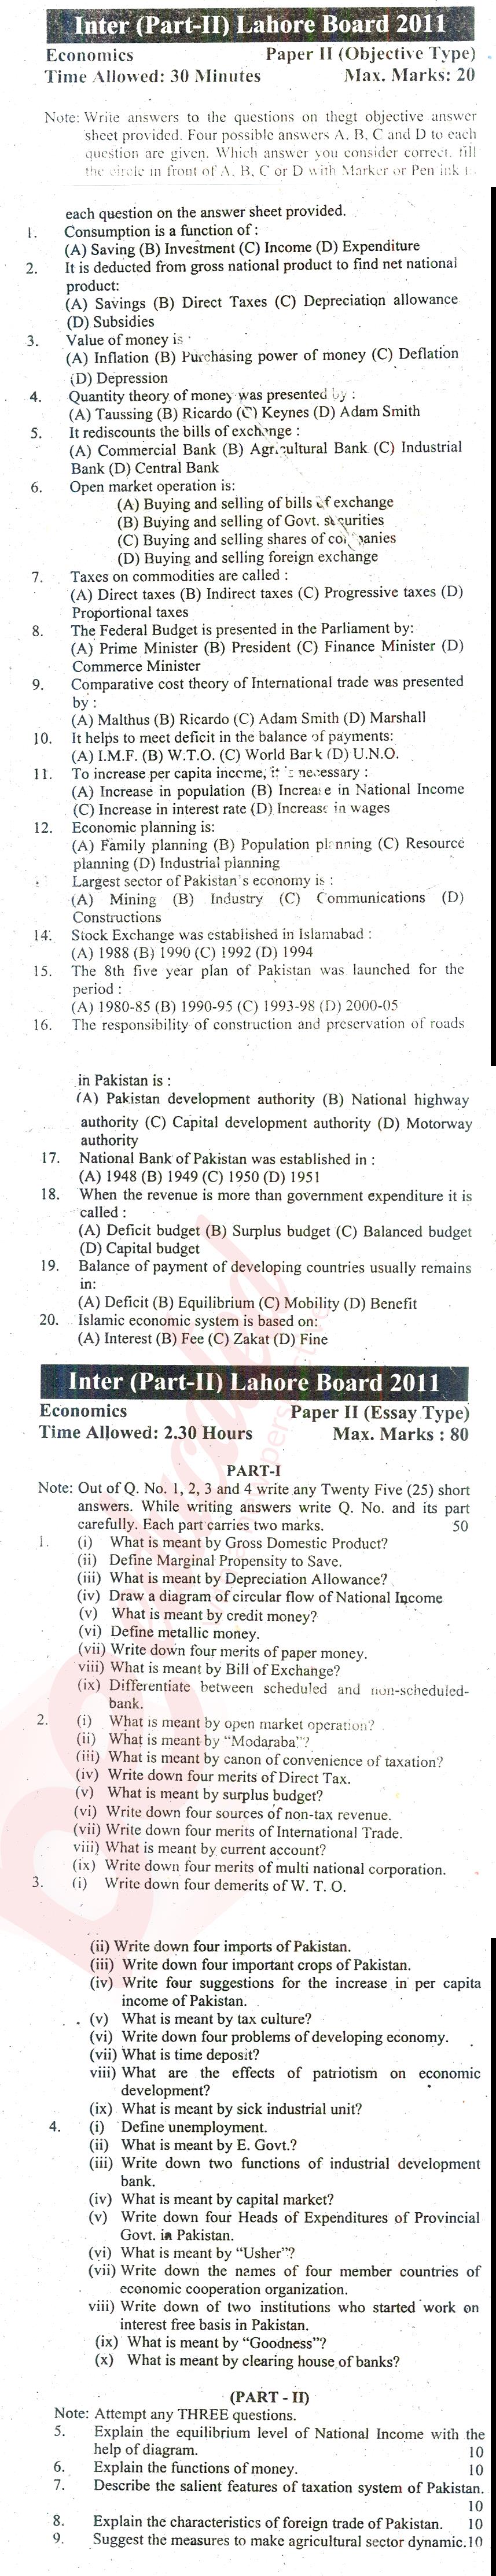 Economics FA Part 2 Past Paper Group 2 BISE Lahore 2011